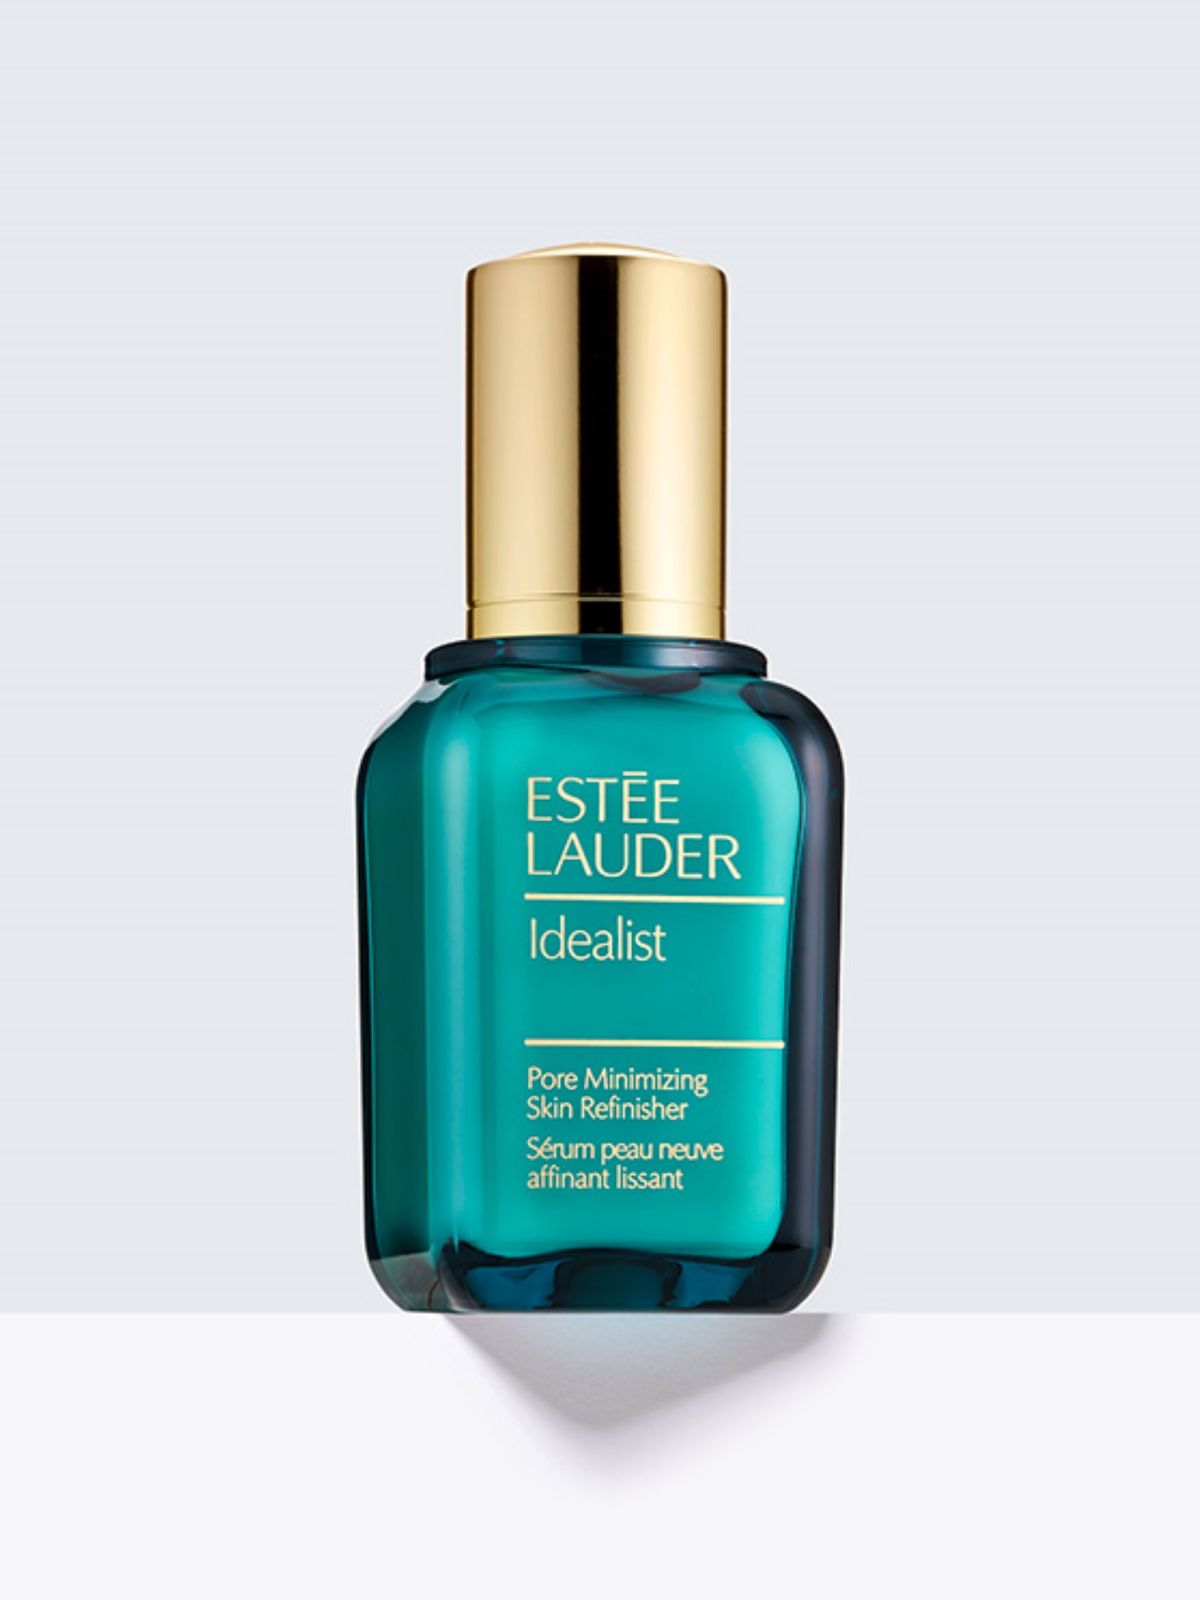  אידיאליסט פרו סרום 50 מ״ל Idealist pore minimizing serum 50Ml של ESTEE LAUDER